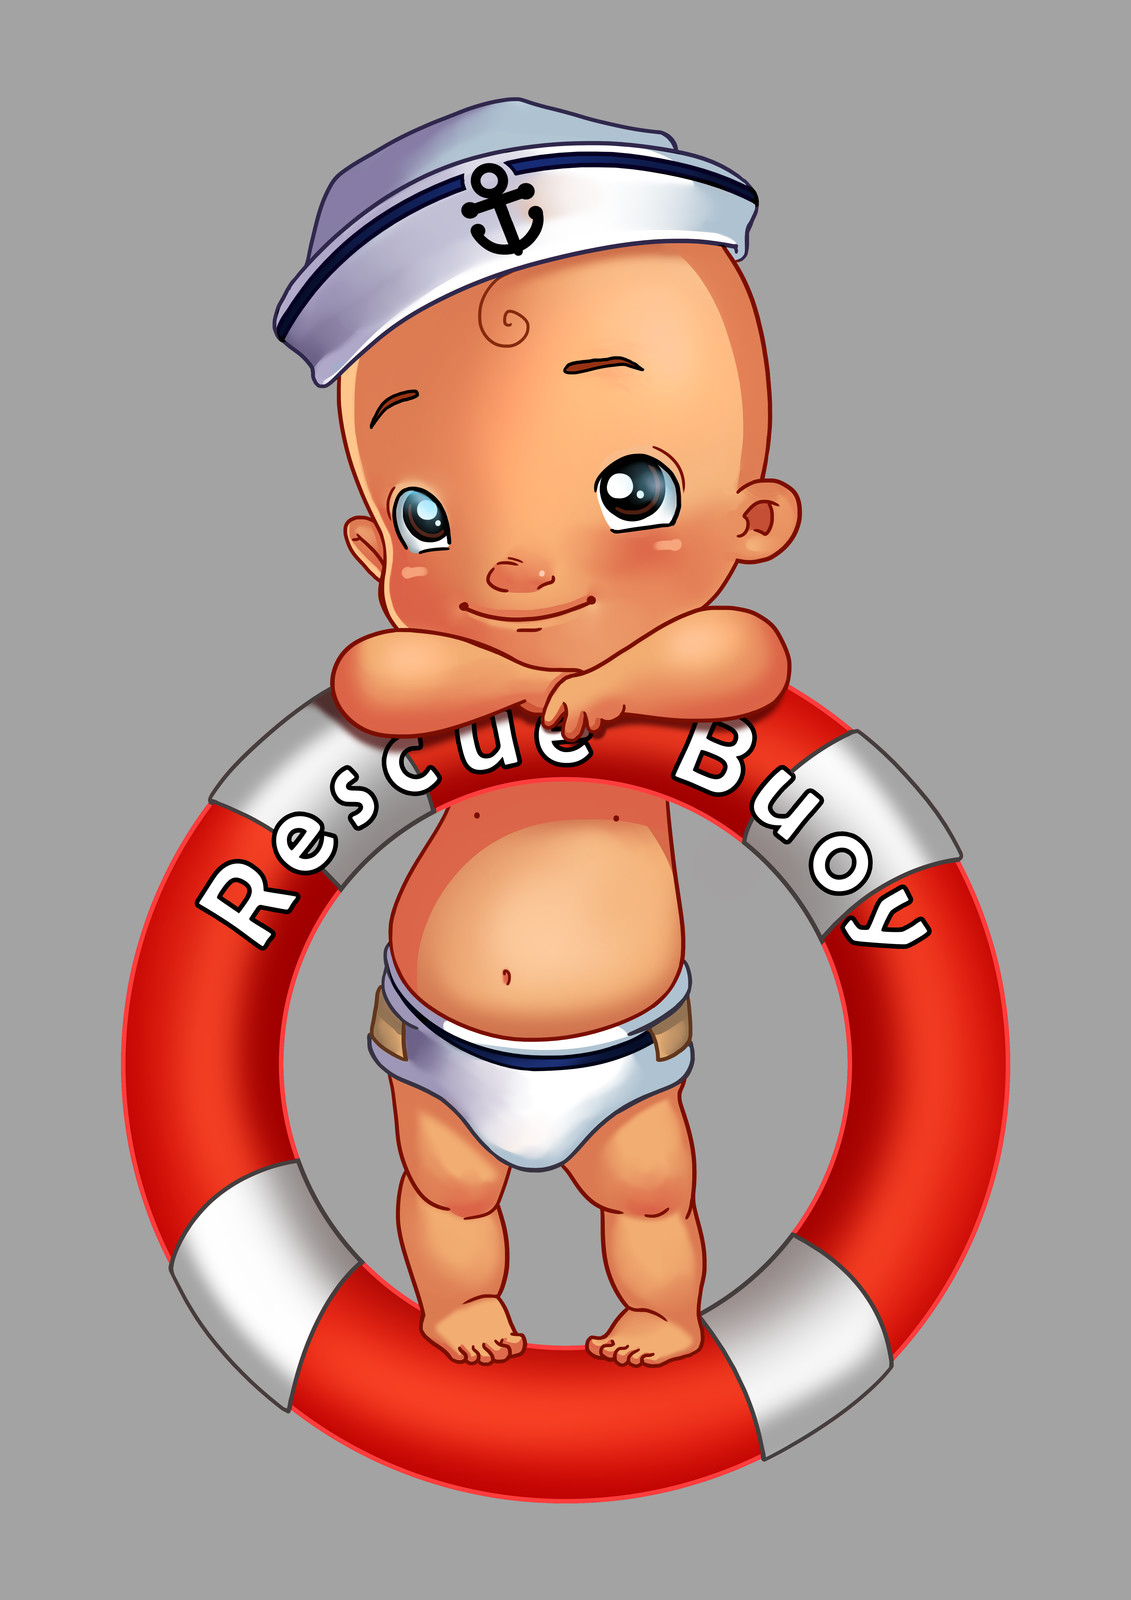 Rescue Buoy